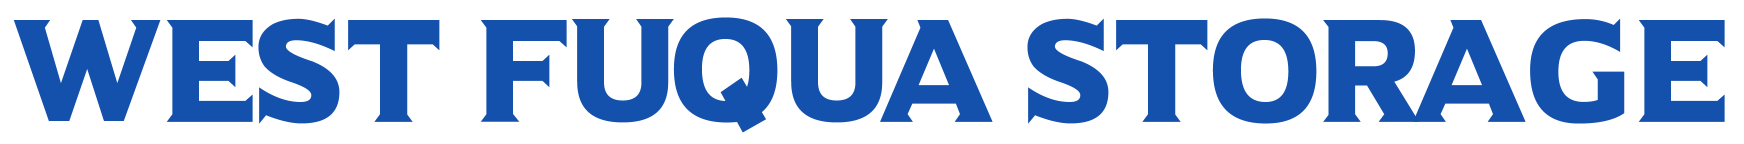 West Fuqua Storage Logo